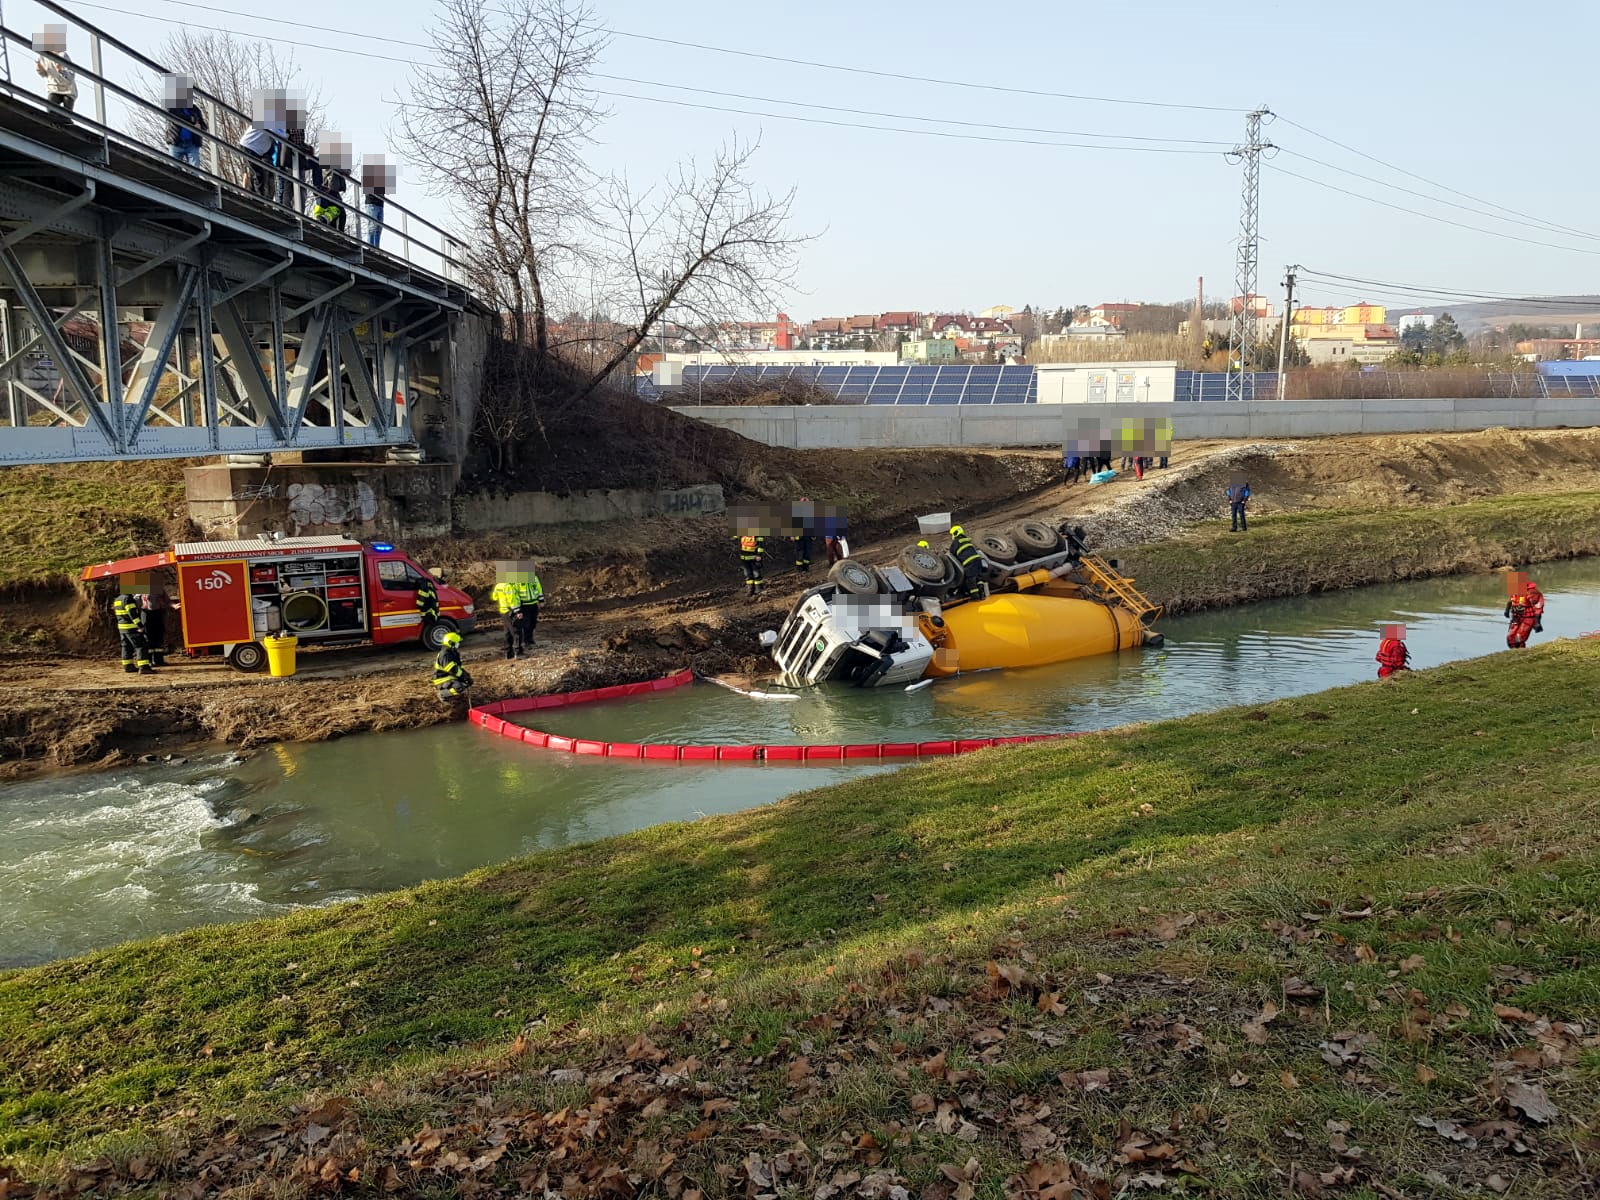 ZLK_dopravní nehoda domíchávače, který spadl do řeky Olšavy_hasiči vytvořili nornou stěnu, která chrání vodní tok.jpg